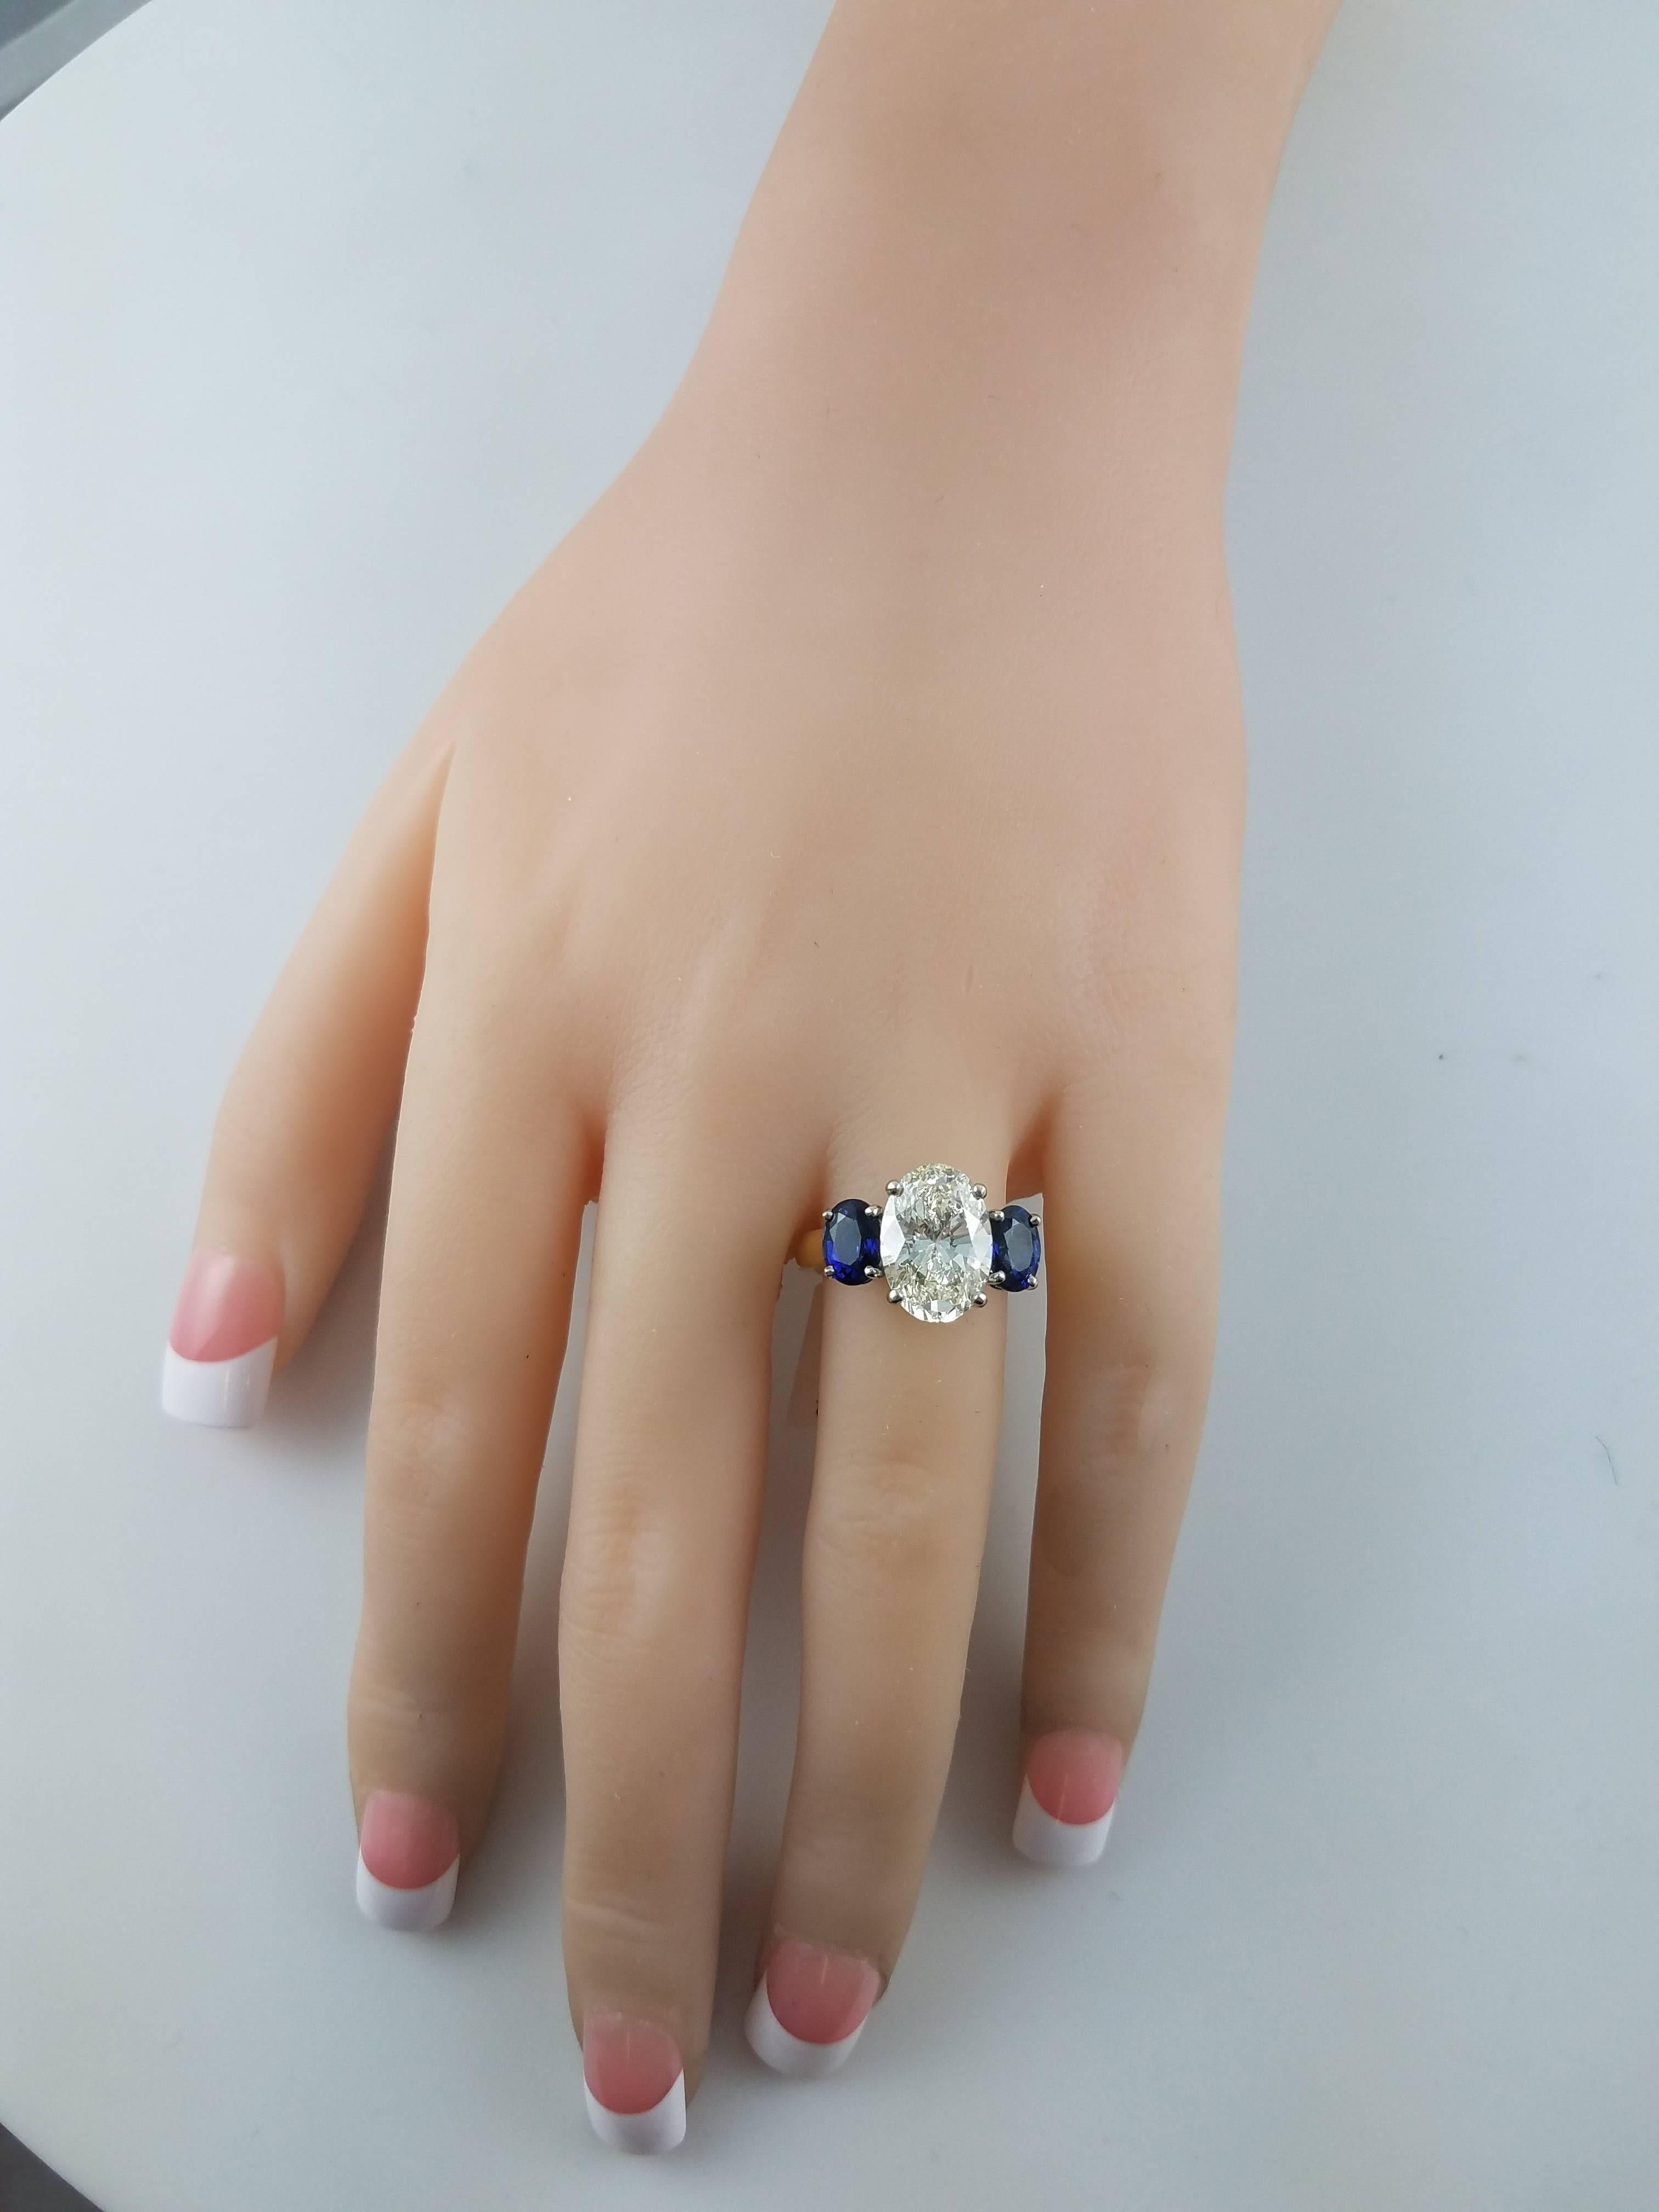 1 carat oval cut diamond